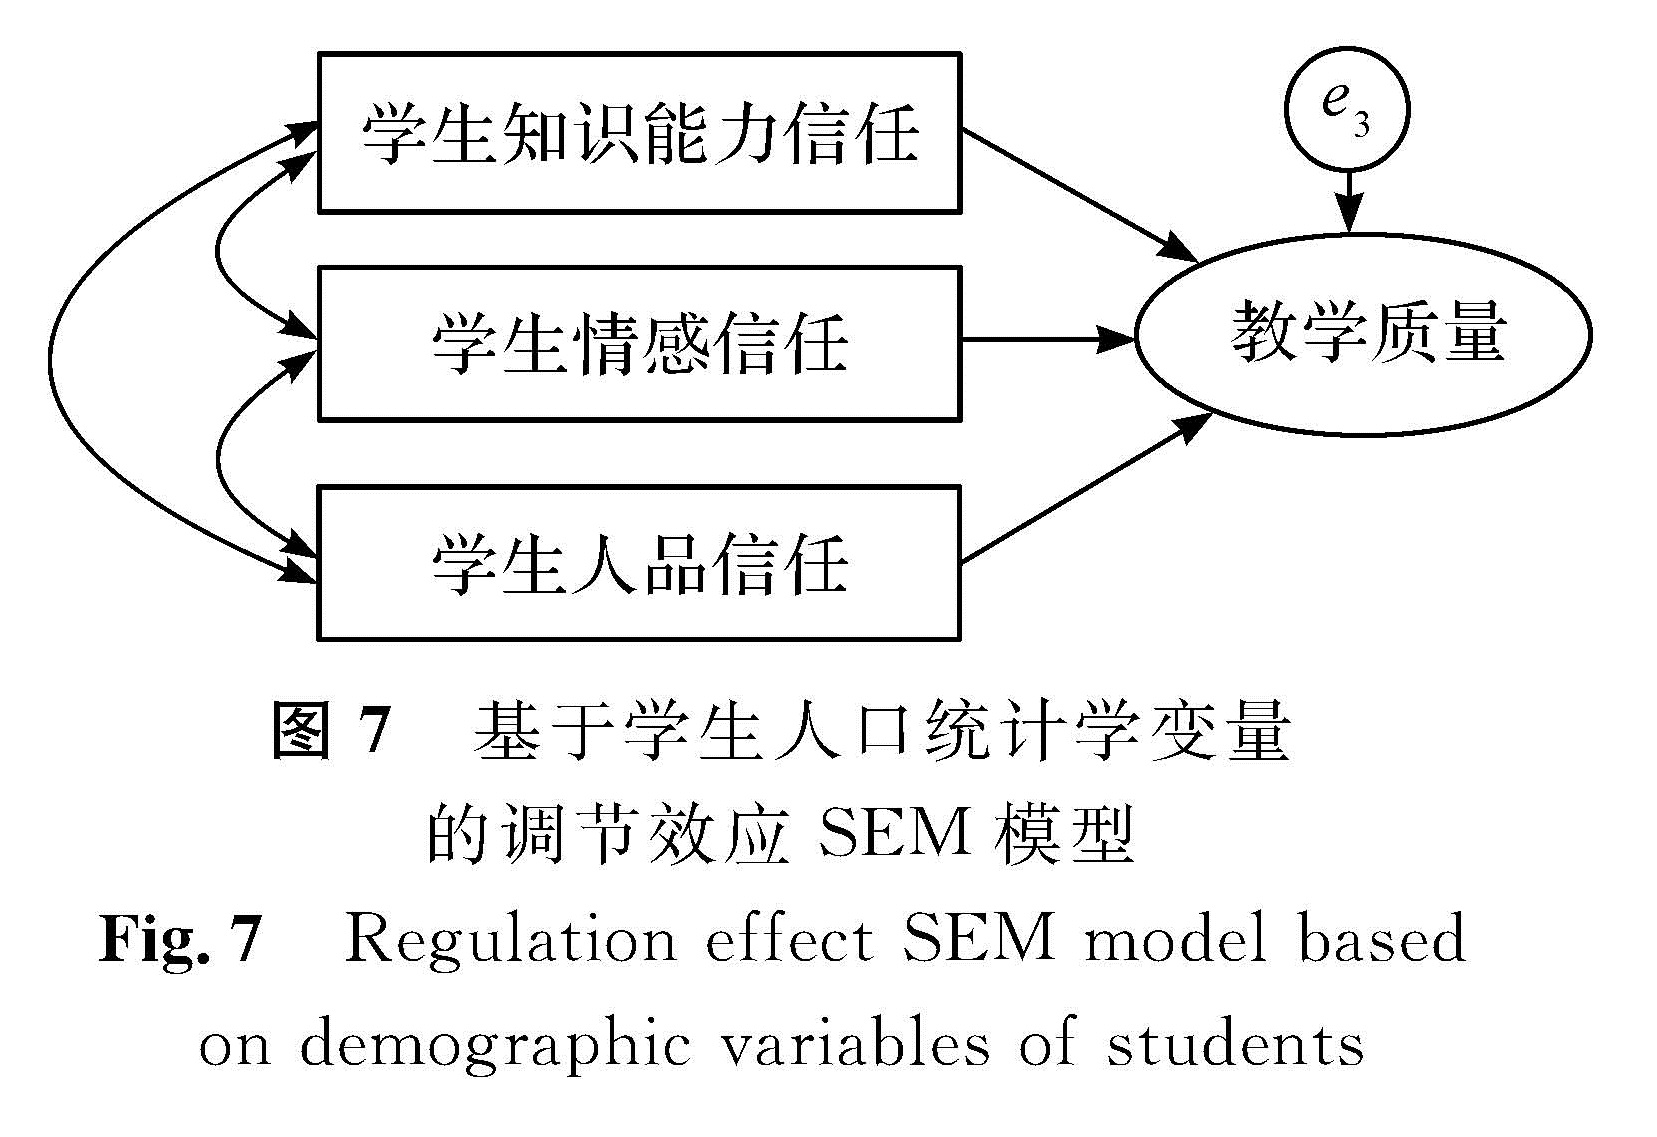 图7 基于学生人口统计学变量的调节效应SEM模型<br/>Fig.7 Regulation effect SEM model based on demographic variables of students